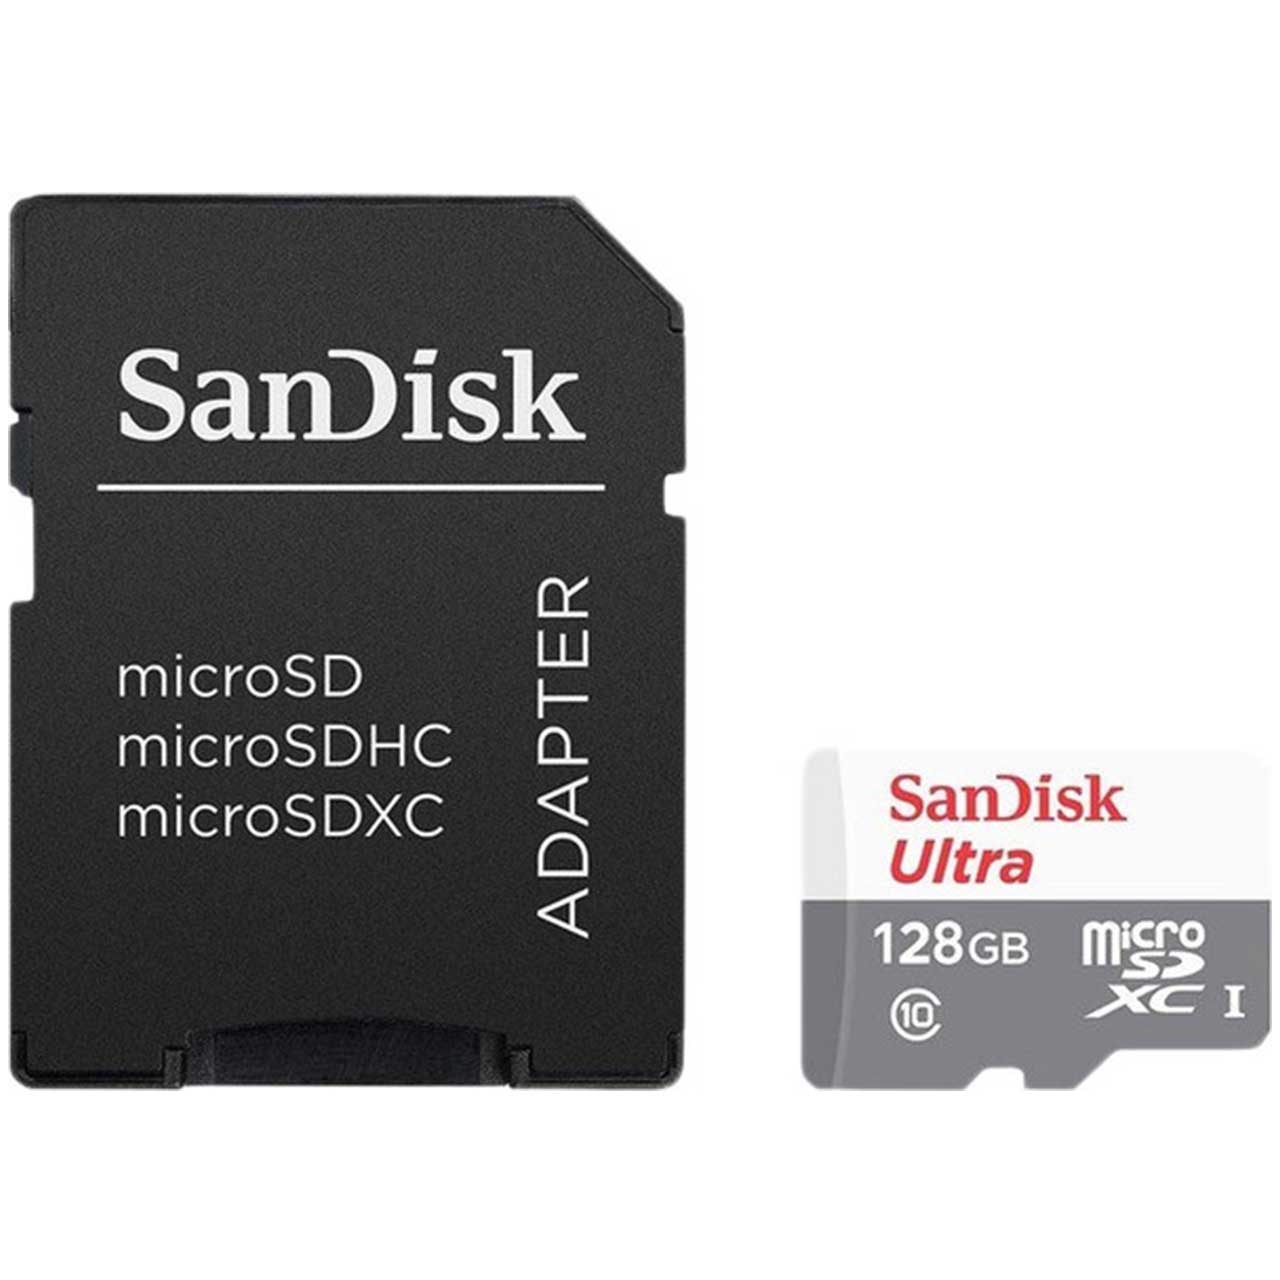 کارت حافظه microSDXC سن دیسک مدل Ultra کلاس 10 استاندارد UHS-I U1 سرعت 48MBps 320X همراه با آداپتور SD ظرفیت 128 گیگابایت